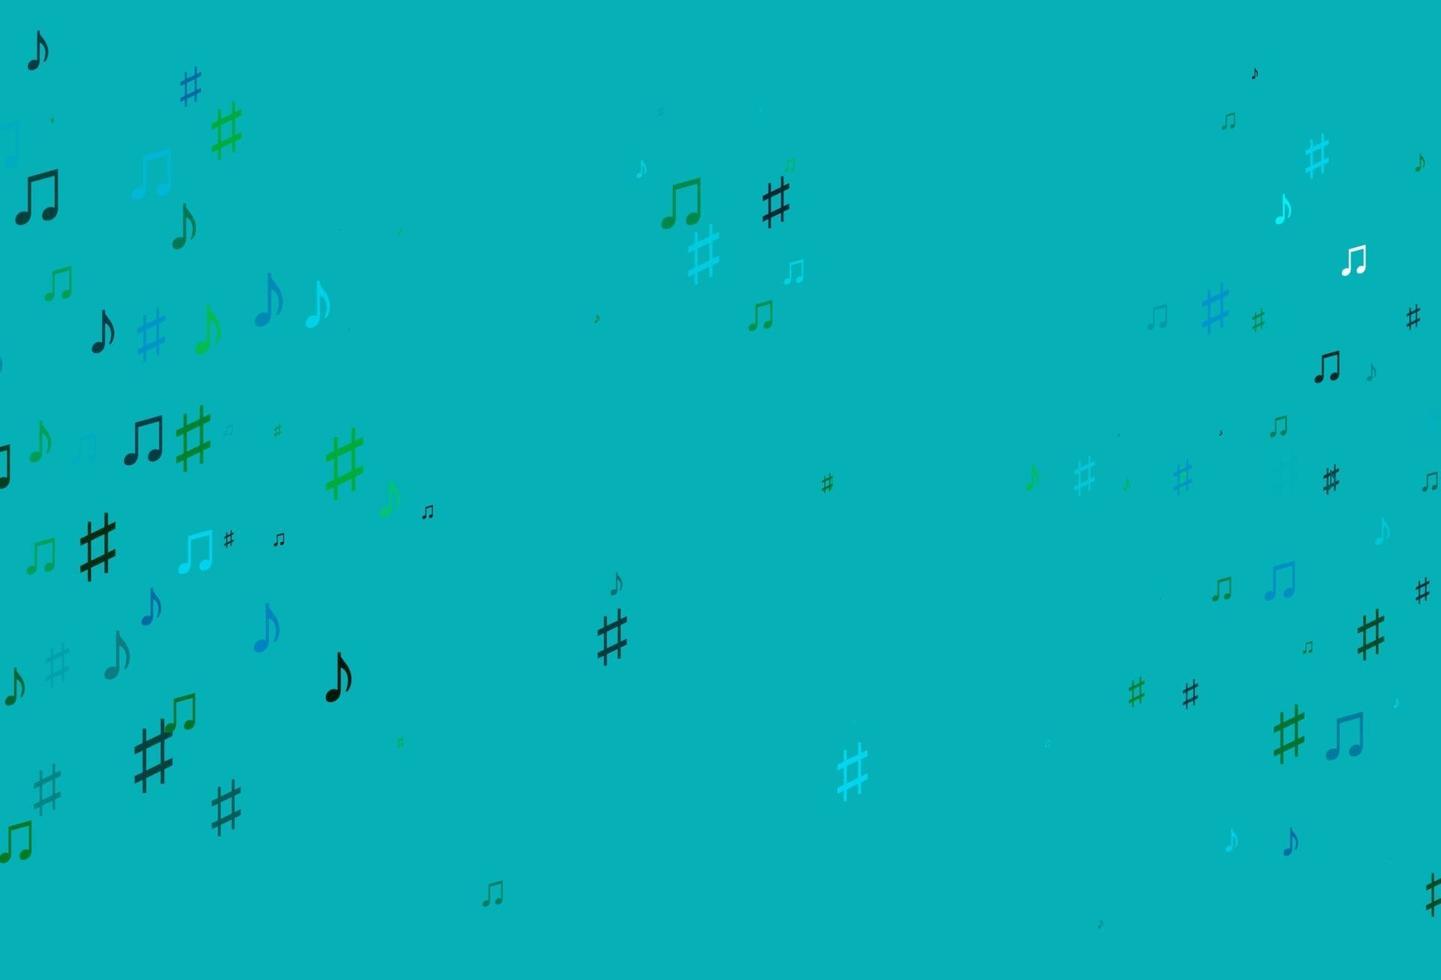 modelo de vetor azul claro e verde com símbolos musicais.